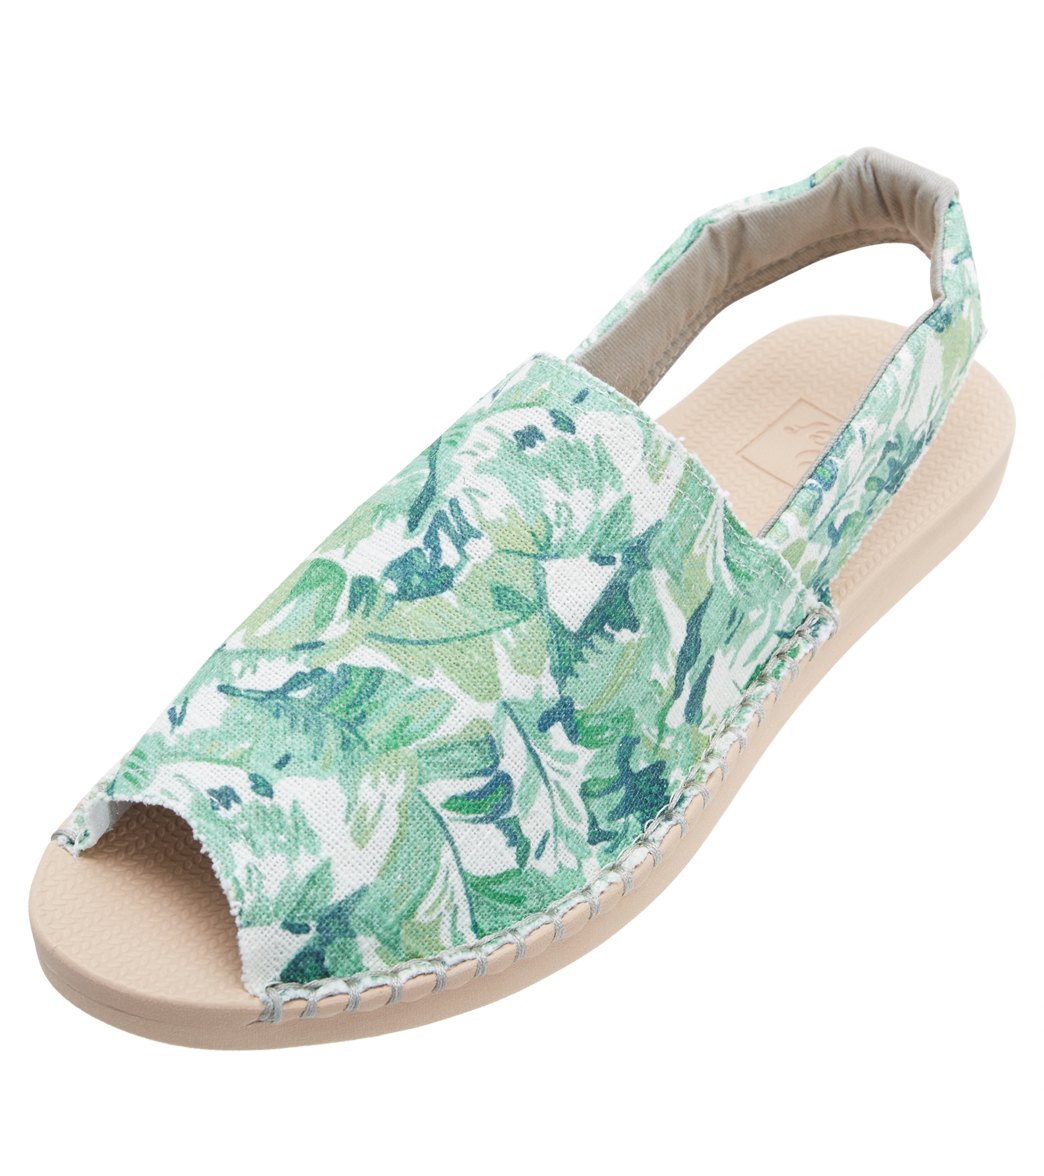 Reef Escape Sling Prints Shoes - Natural Palms 6 - Swimoutlet.com